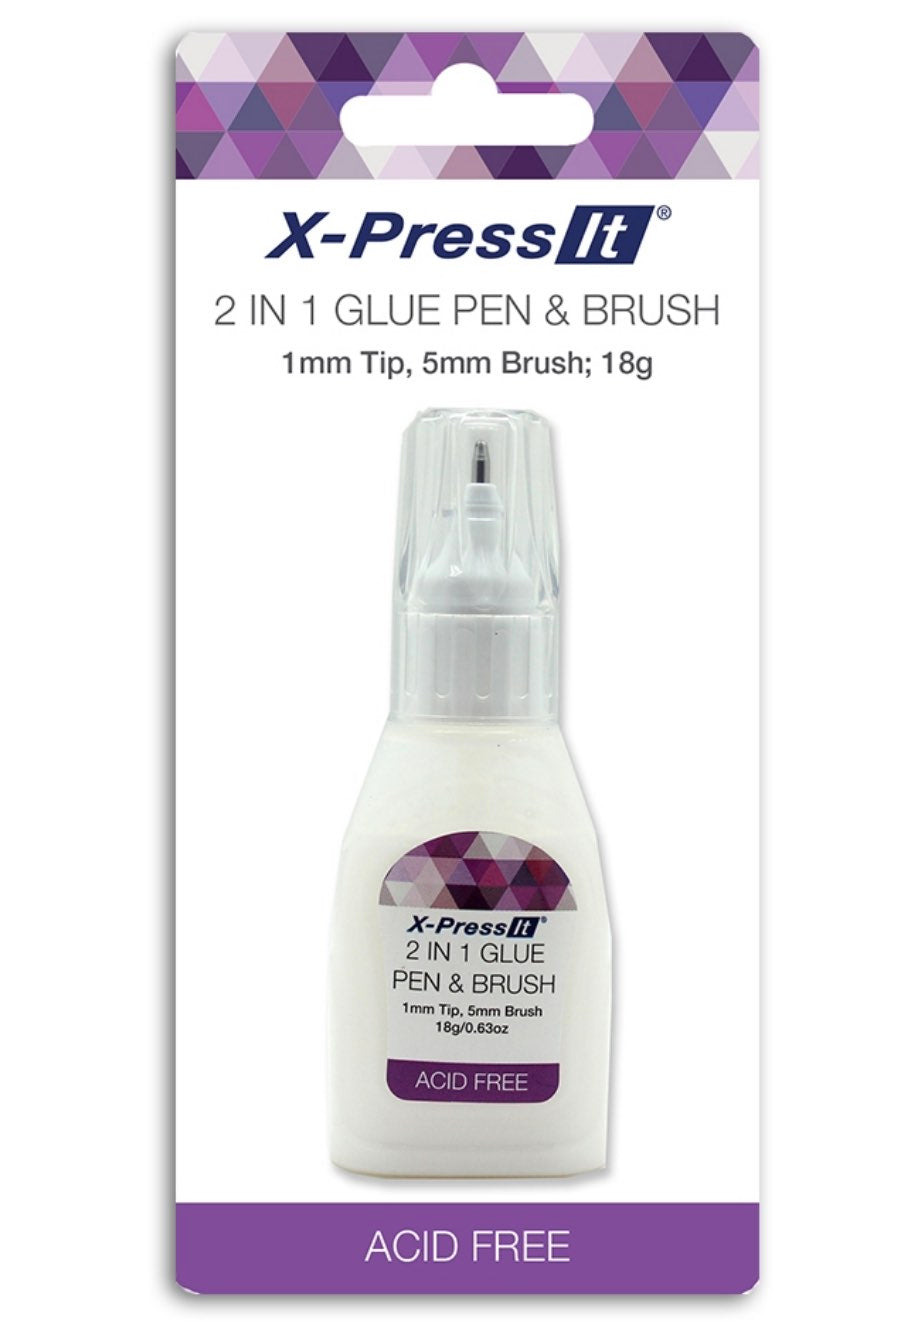 X-Press It 2 in 1 Glue Pen & Brush